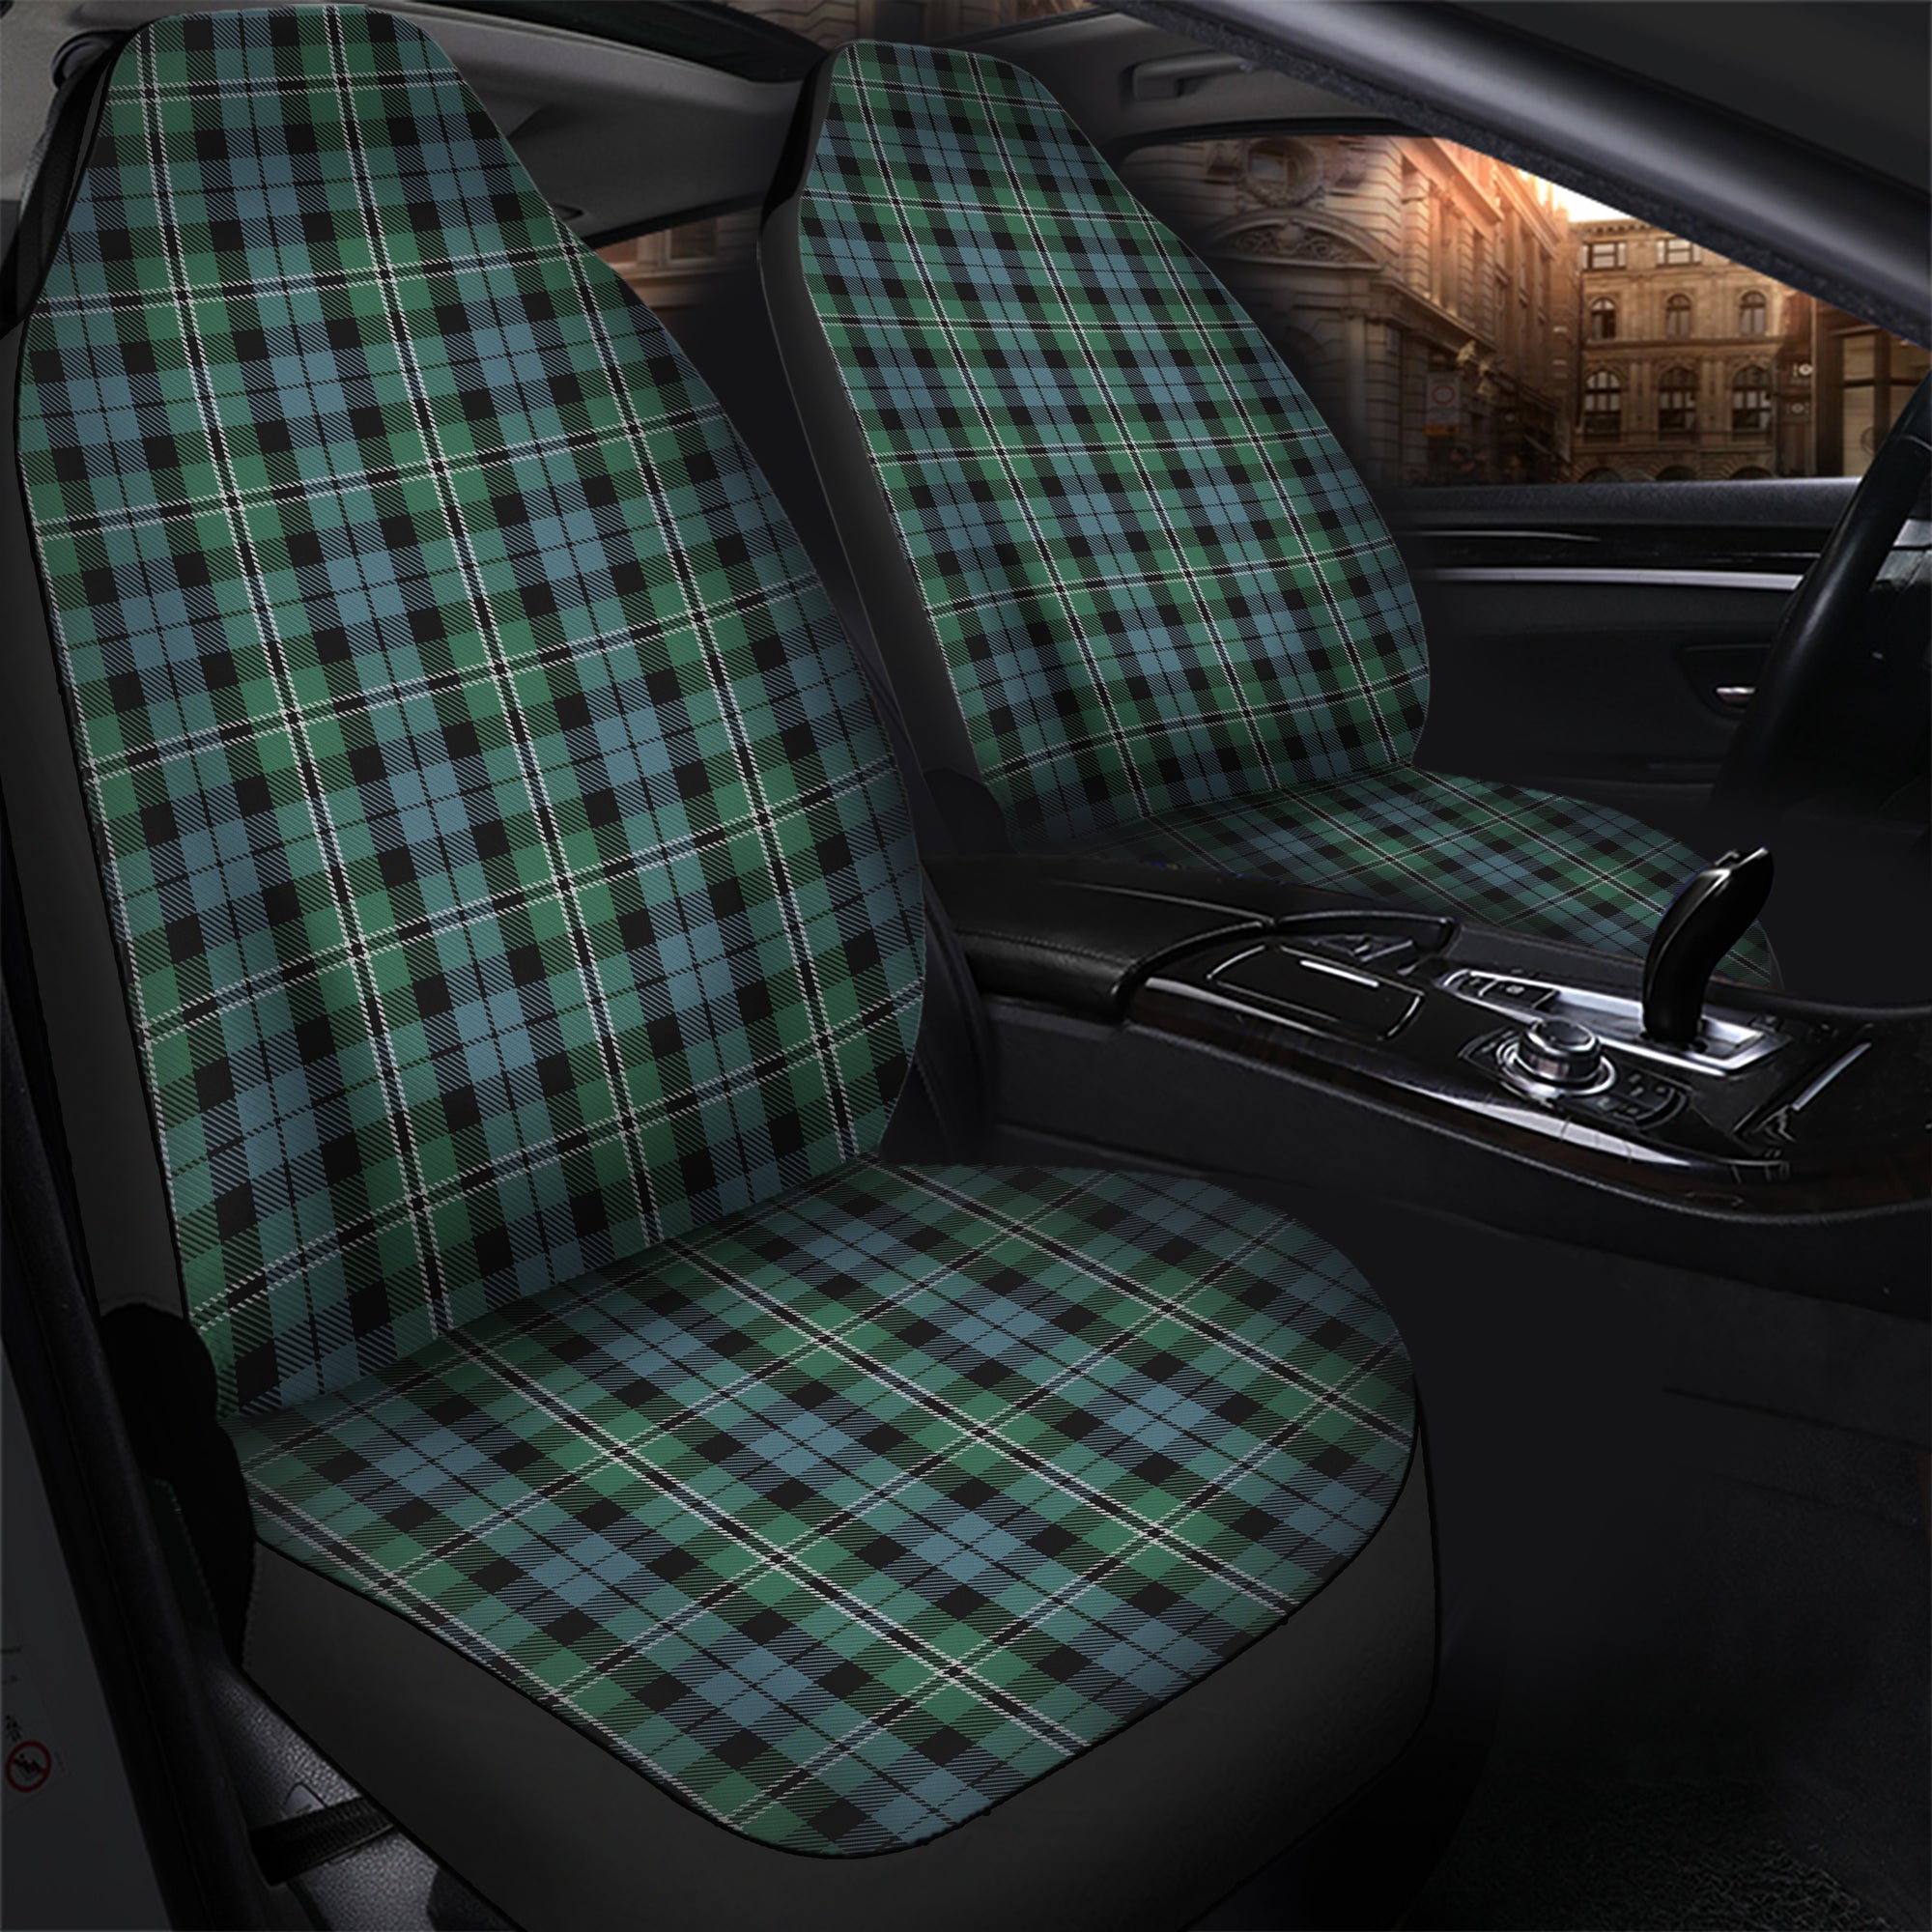 scottish-melville-clan-tartan-car-seat-cover